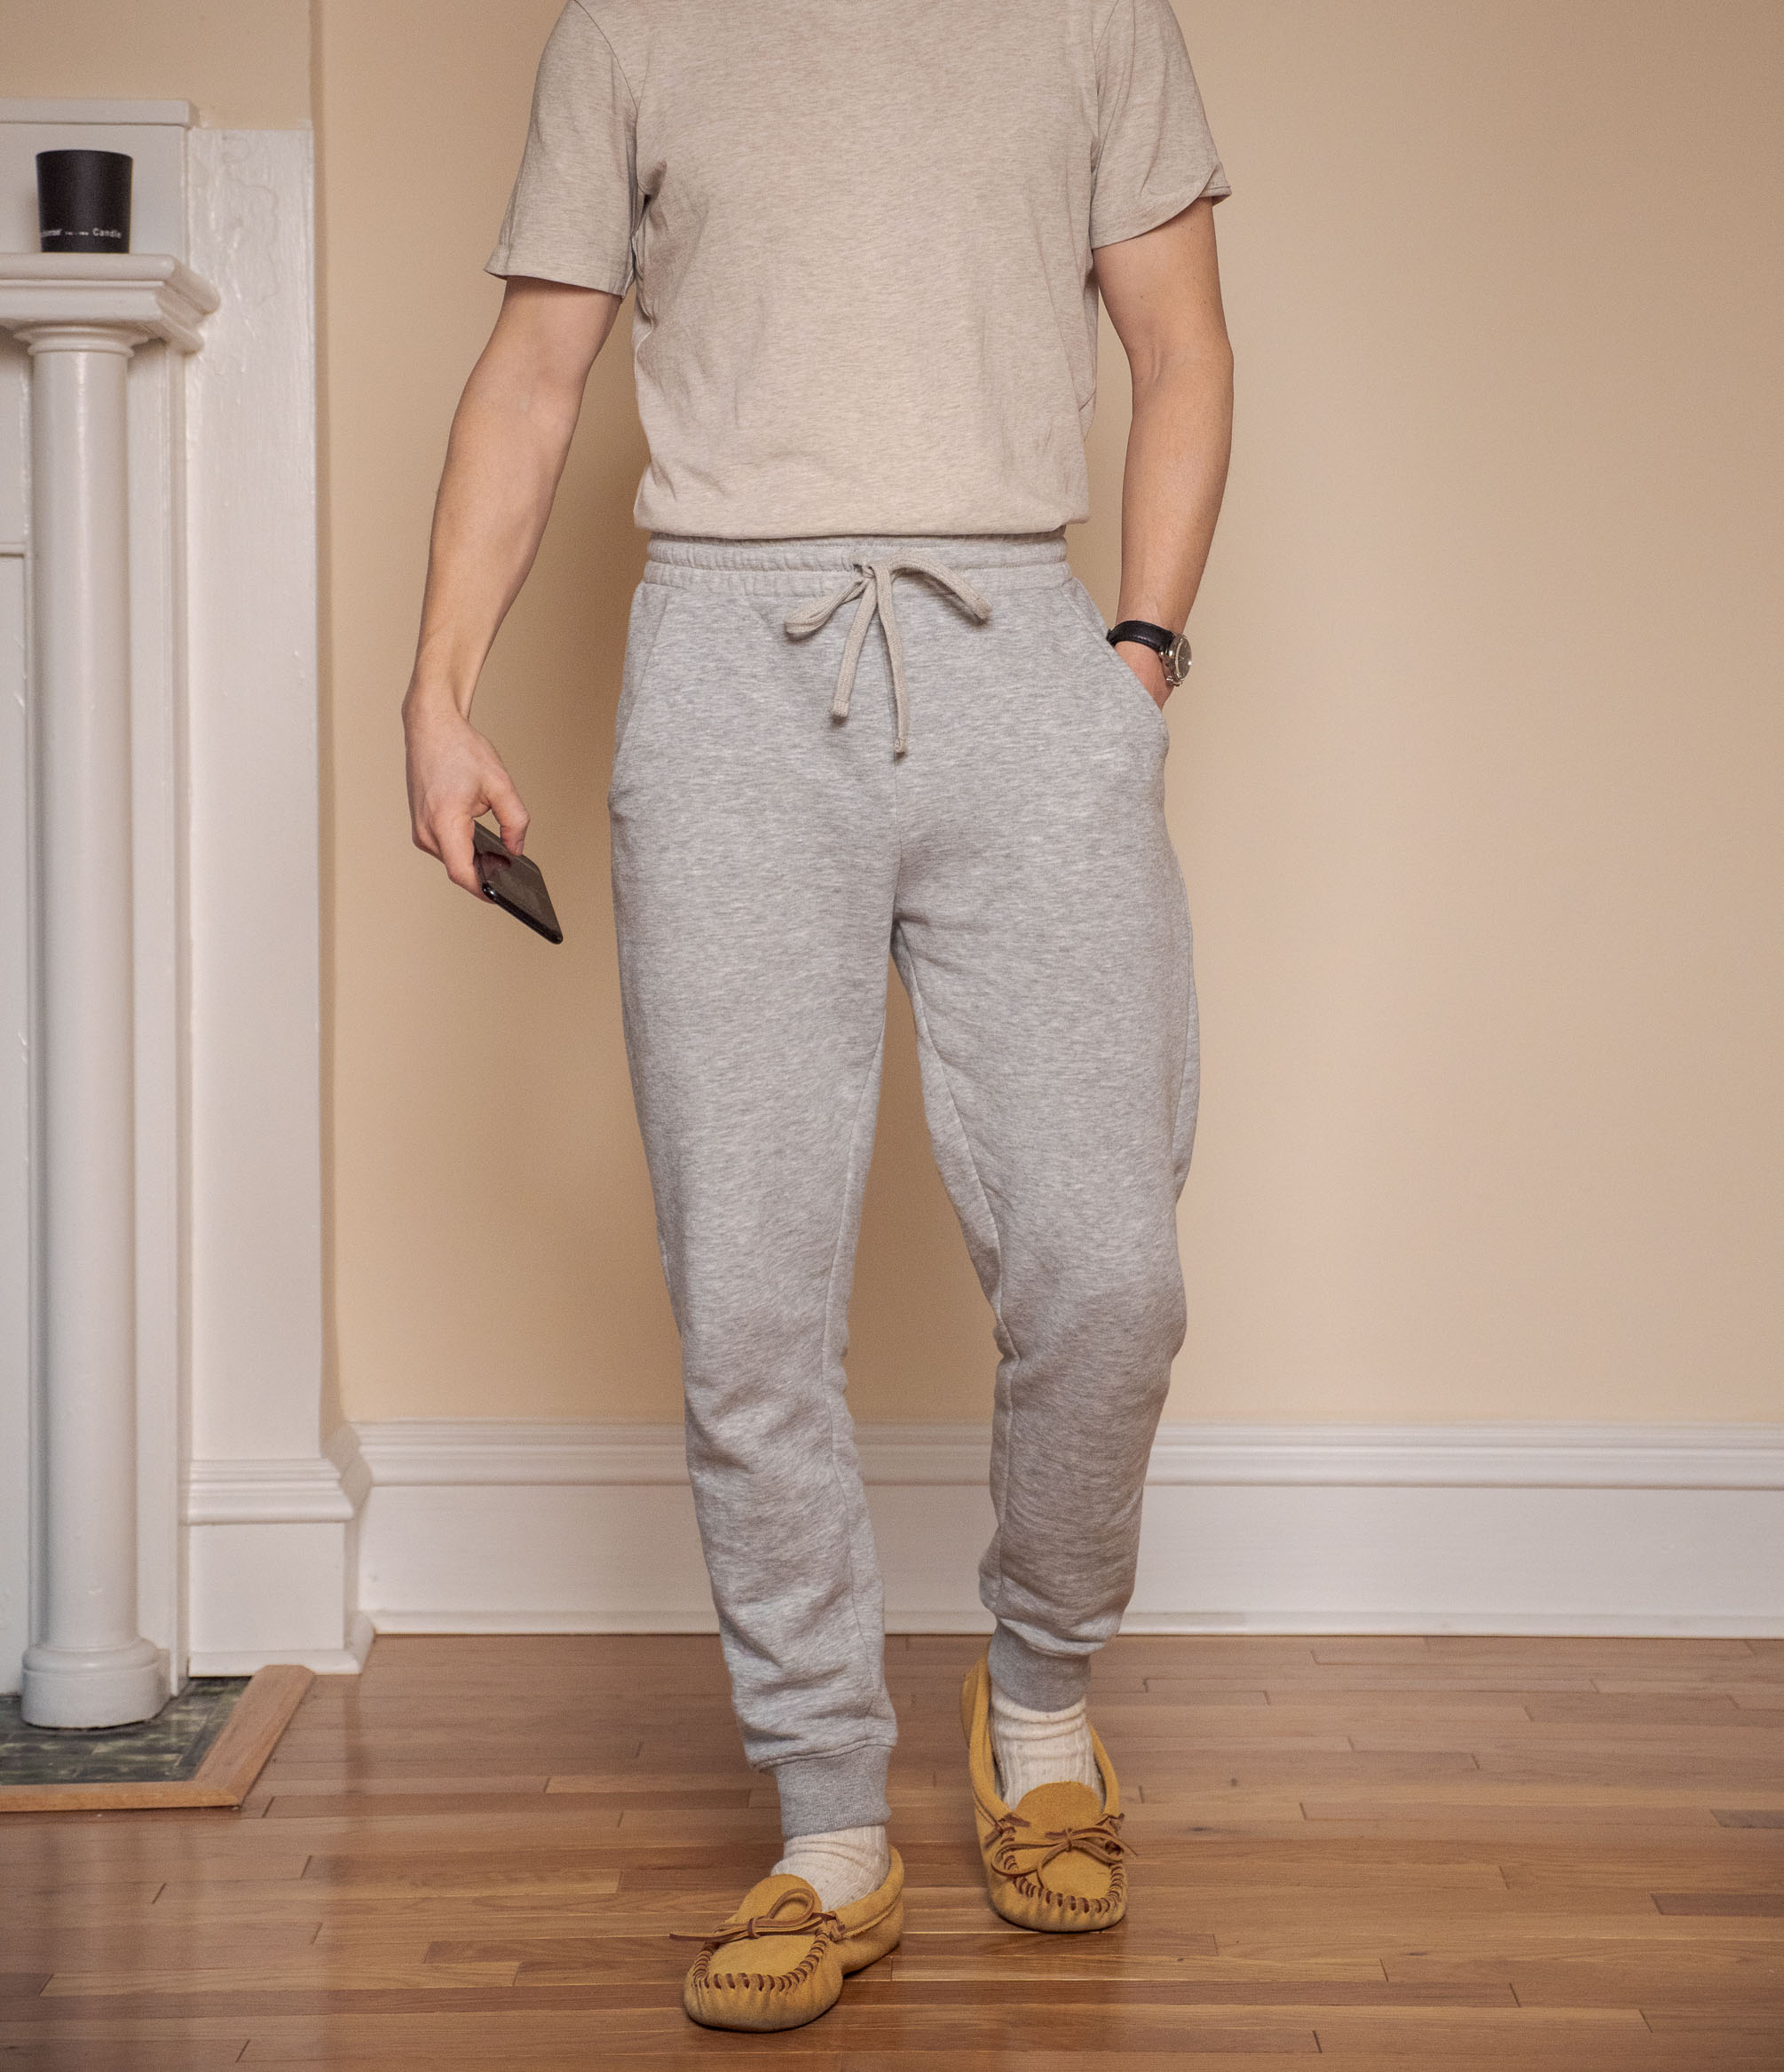 12 Pants For Short Men  Best Styles For 2023  FashionBeans